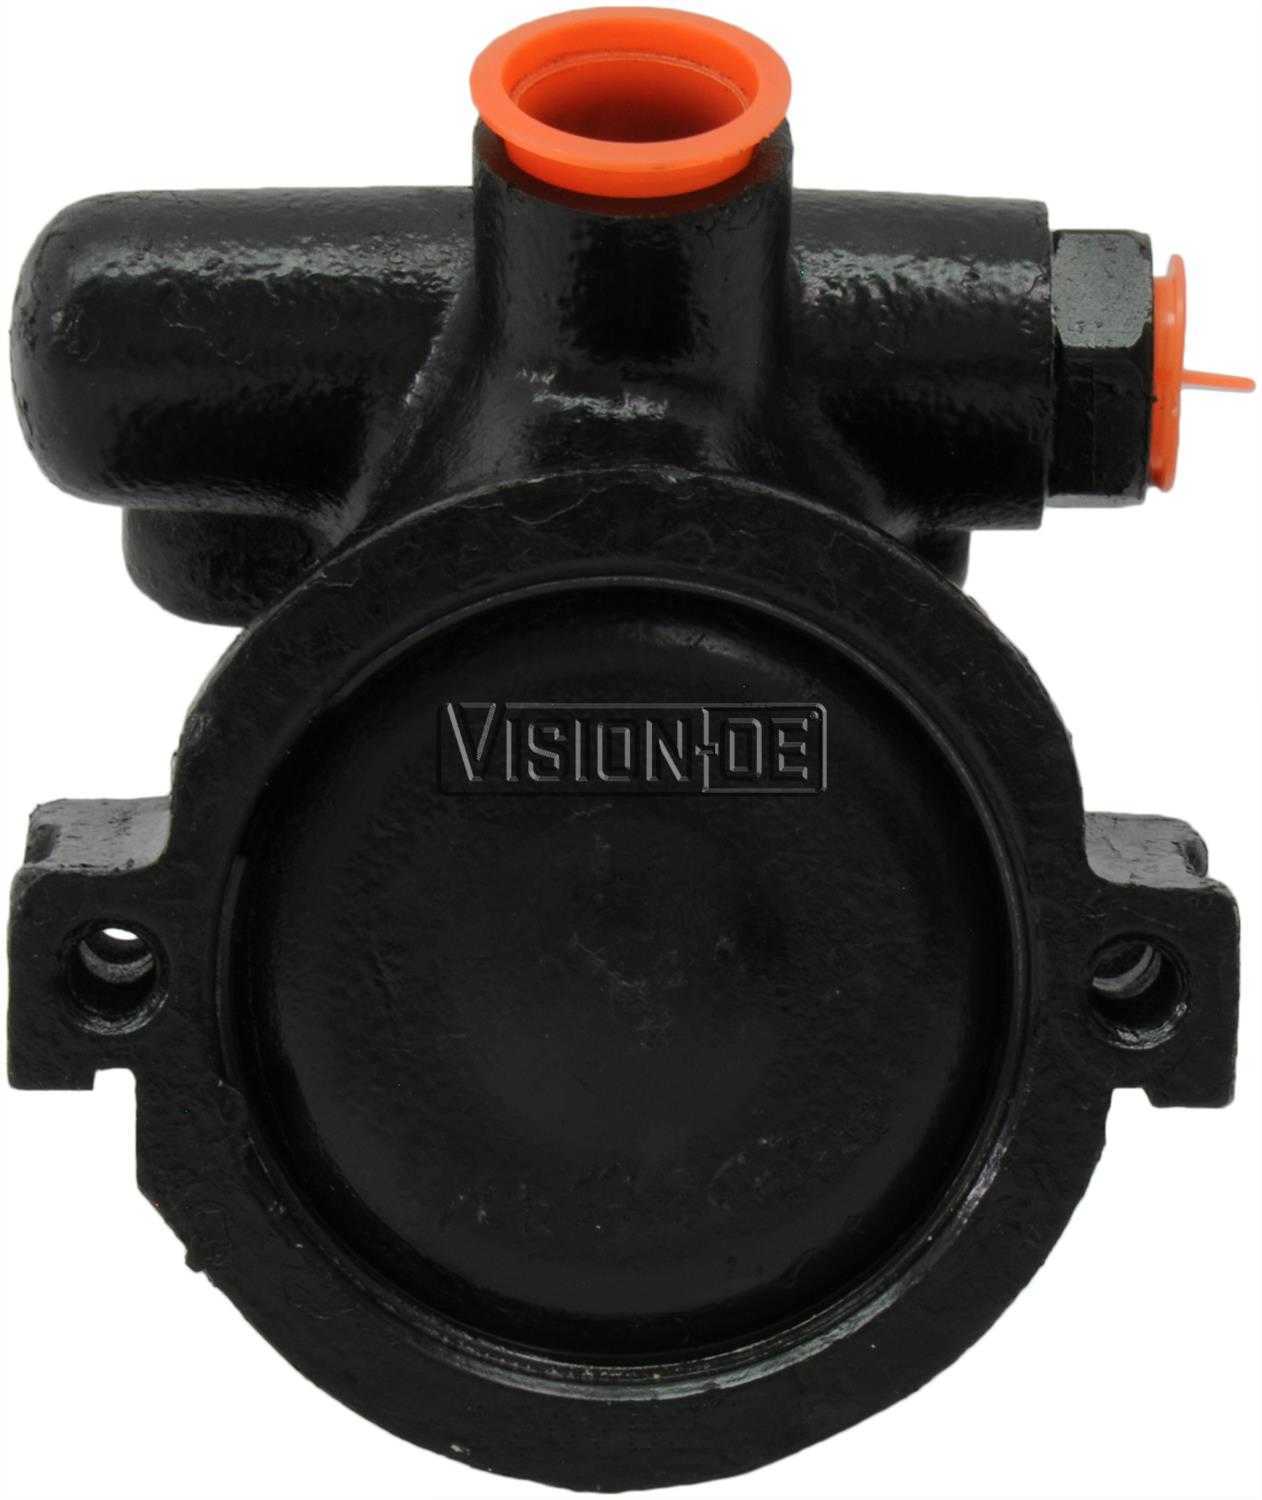 VISION-OE - Reman Power Steering Pump - VOE 734-0144